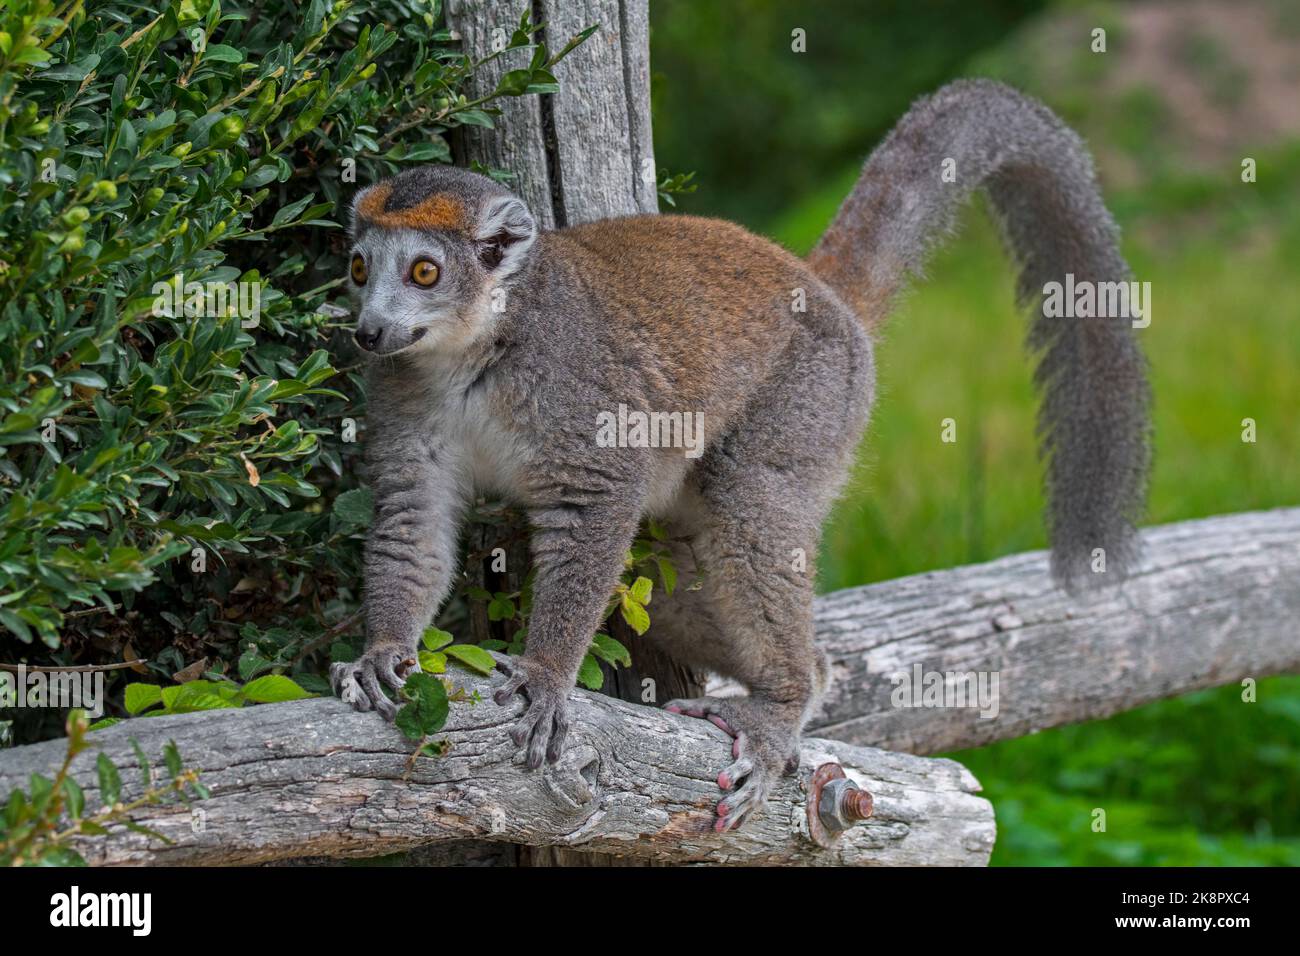 Lemur coronato (Eulemur coronatus / Lemur coronatus) in zoo, primate nativo alla punta settentrionale del Madagascar, Africa Foto Stock